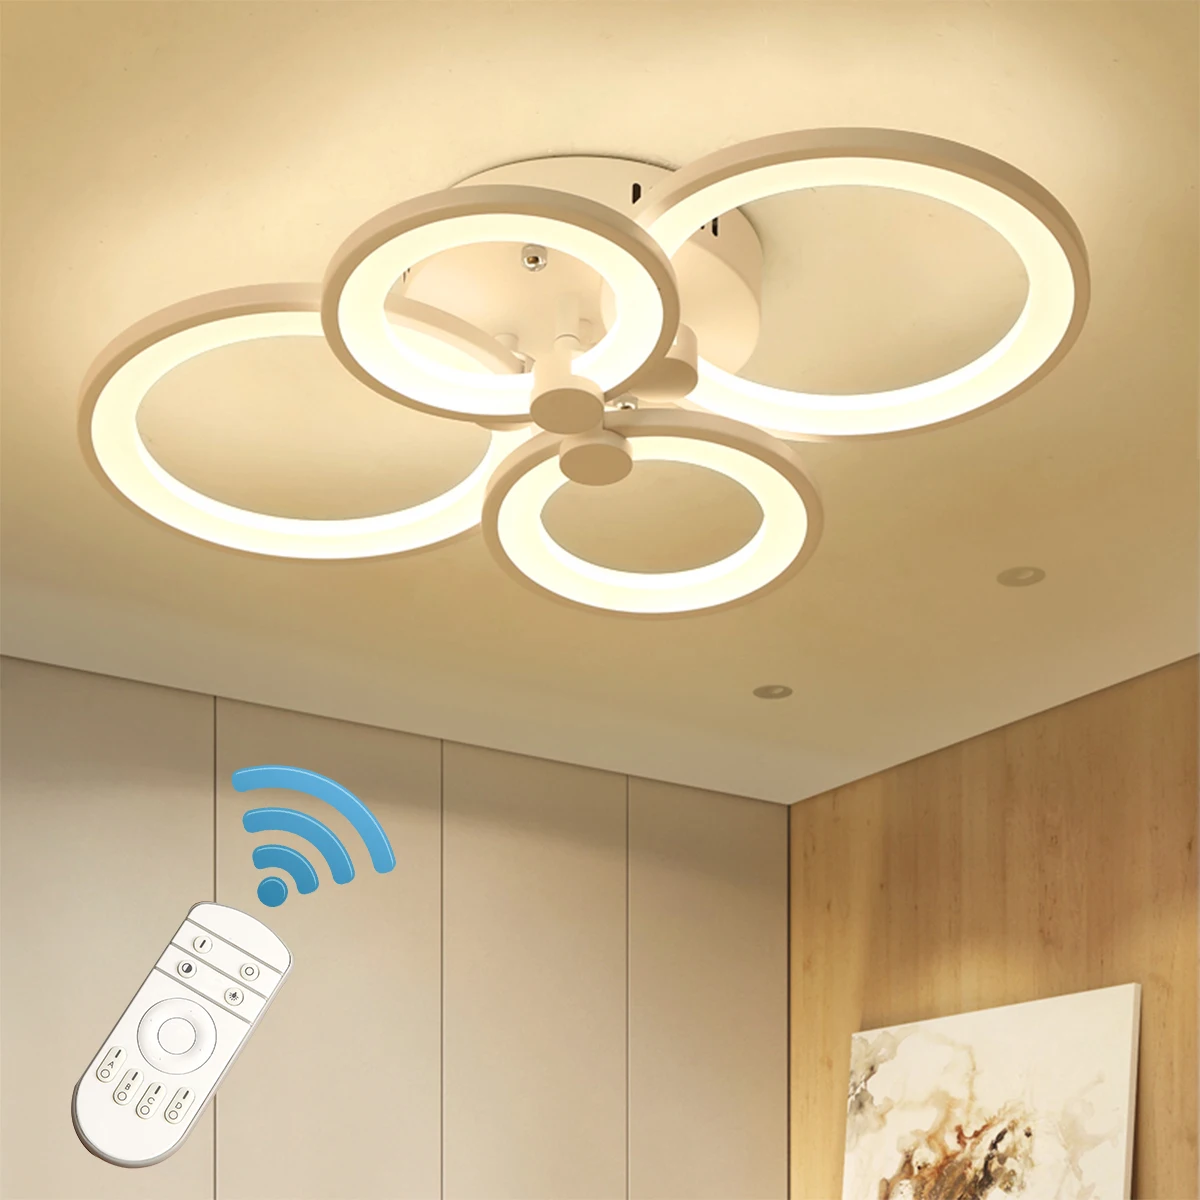 Ganeed-lámpara de techo acrílica regulable con Control remoto, accesorio de montaje empotrado, para sala de Estar, comedor, hogar y Loft